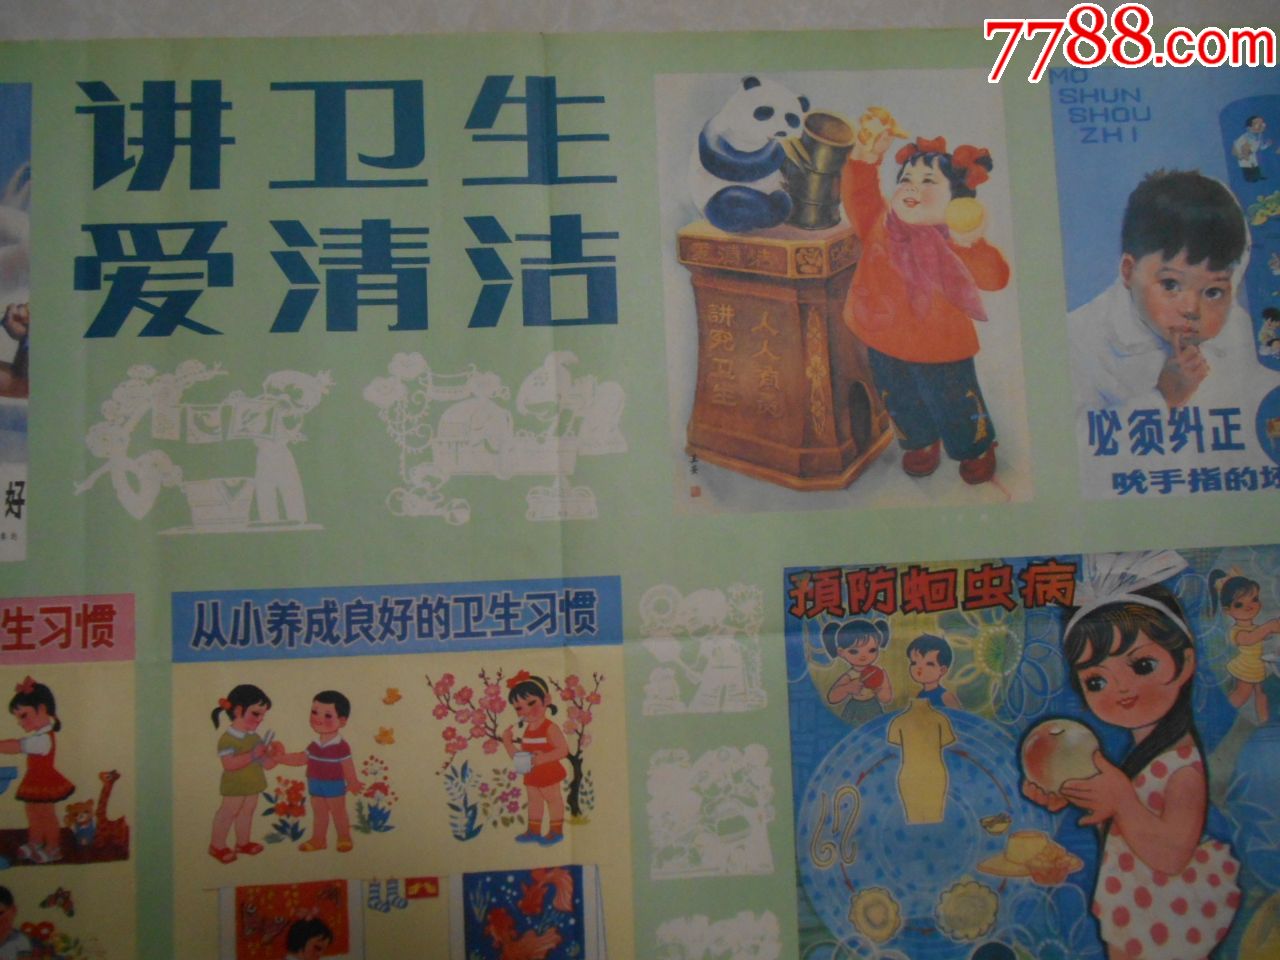 北京二开宣传画:讲卫生爱清洁,1986.